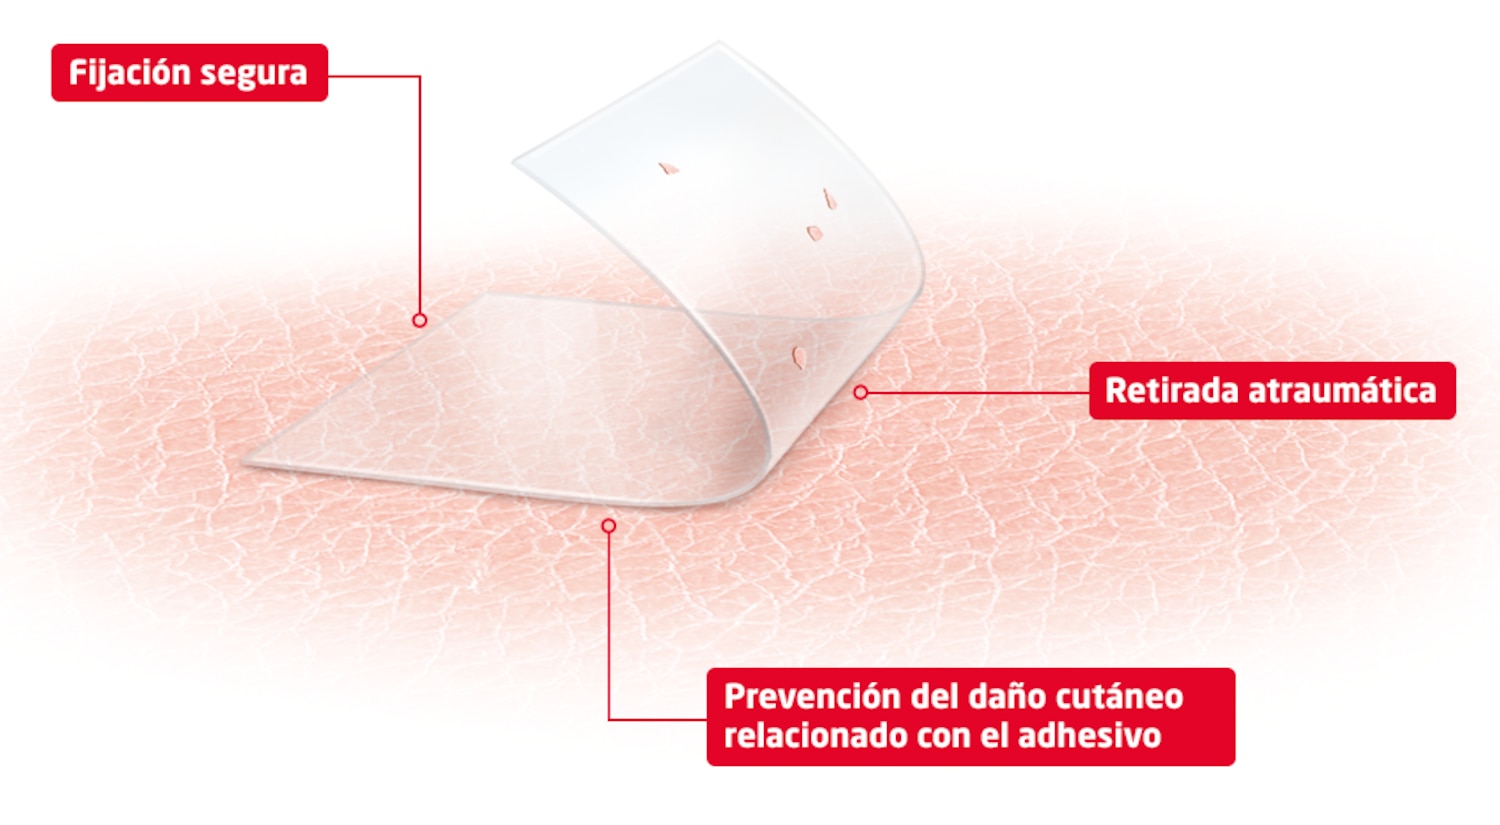 Imagen de producto que muestra los beneficios de la tecnología skin sensitive: fijación segura, retirada atraumática y prevención de lesiones cutáneas relacionadas con el adhesivo. 